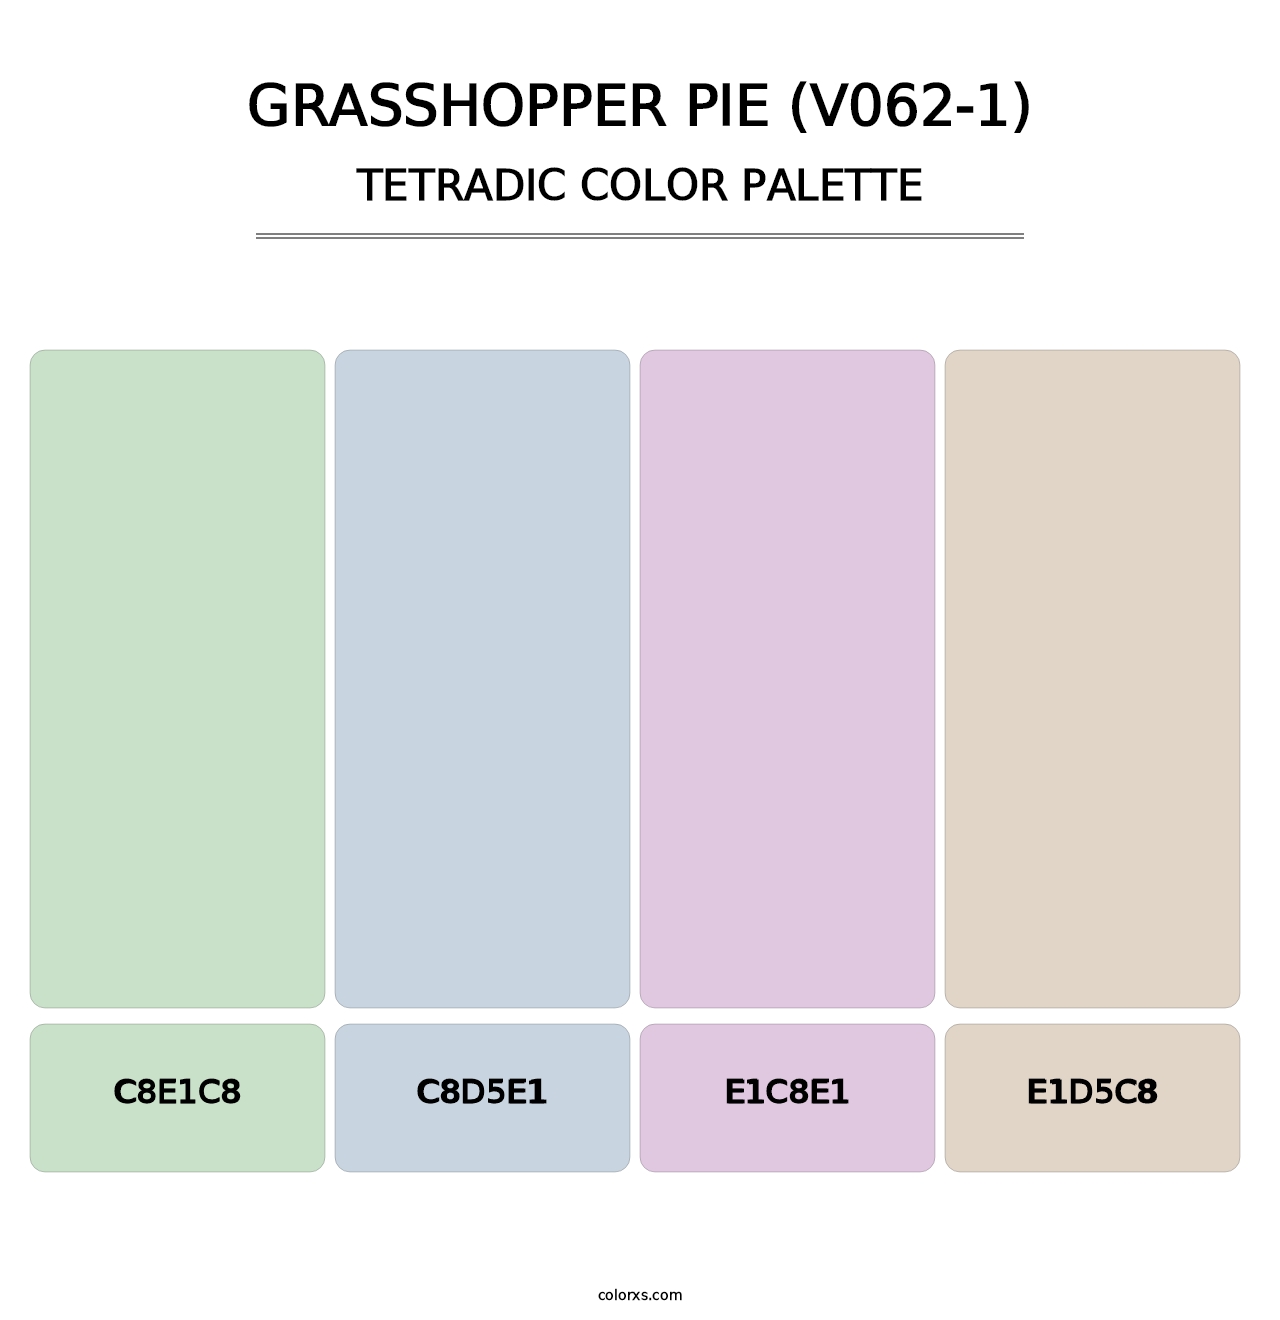 Grasshopper Pie (V062-1) - Tetradic Color Palette